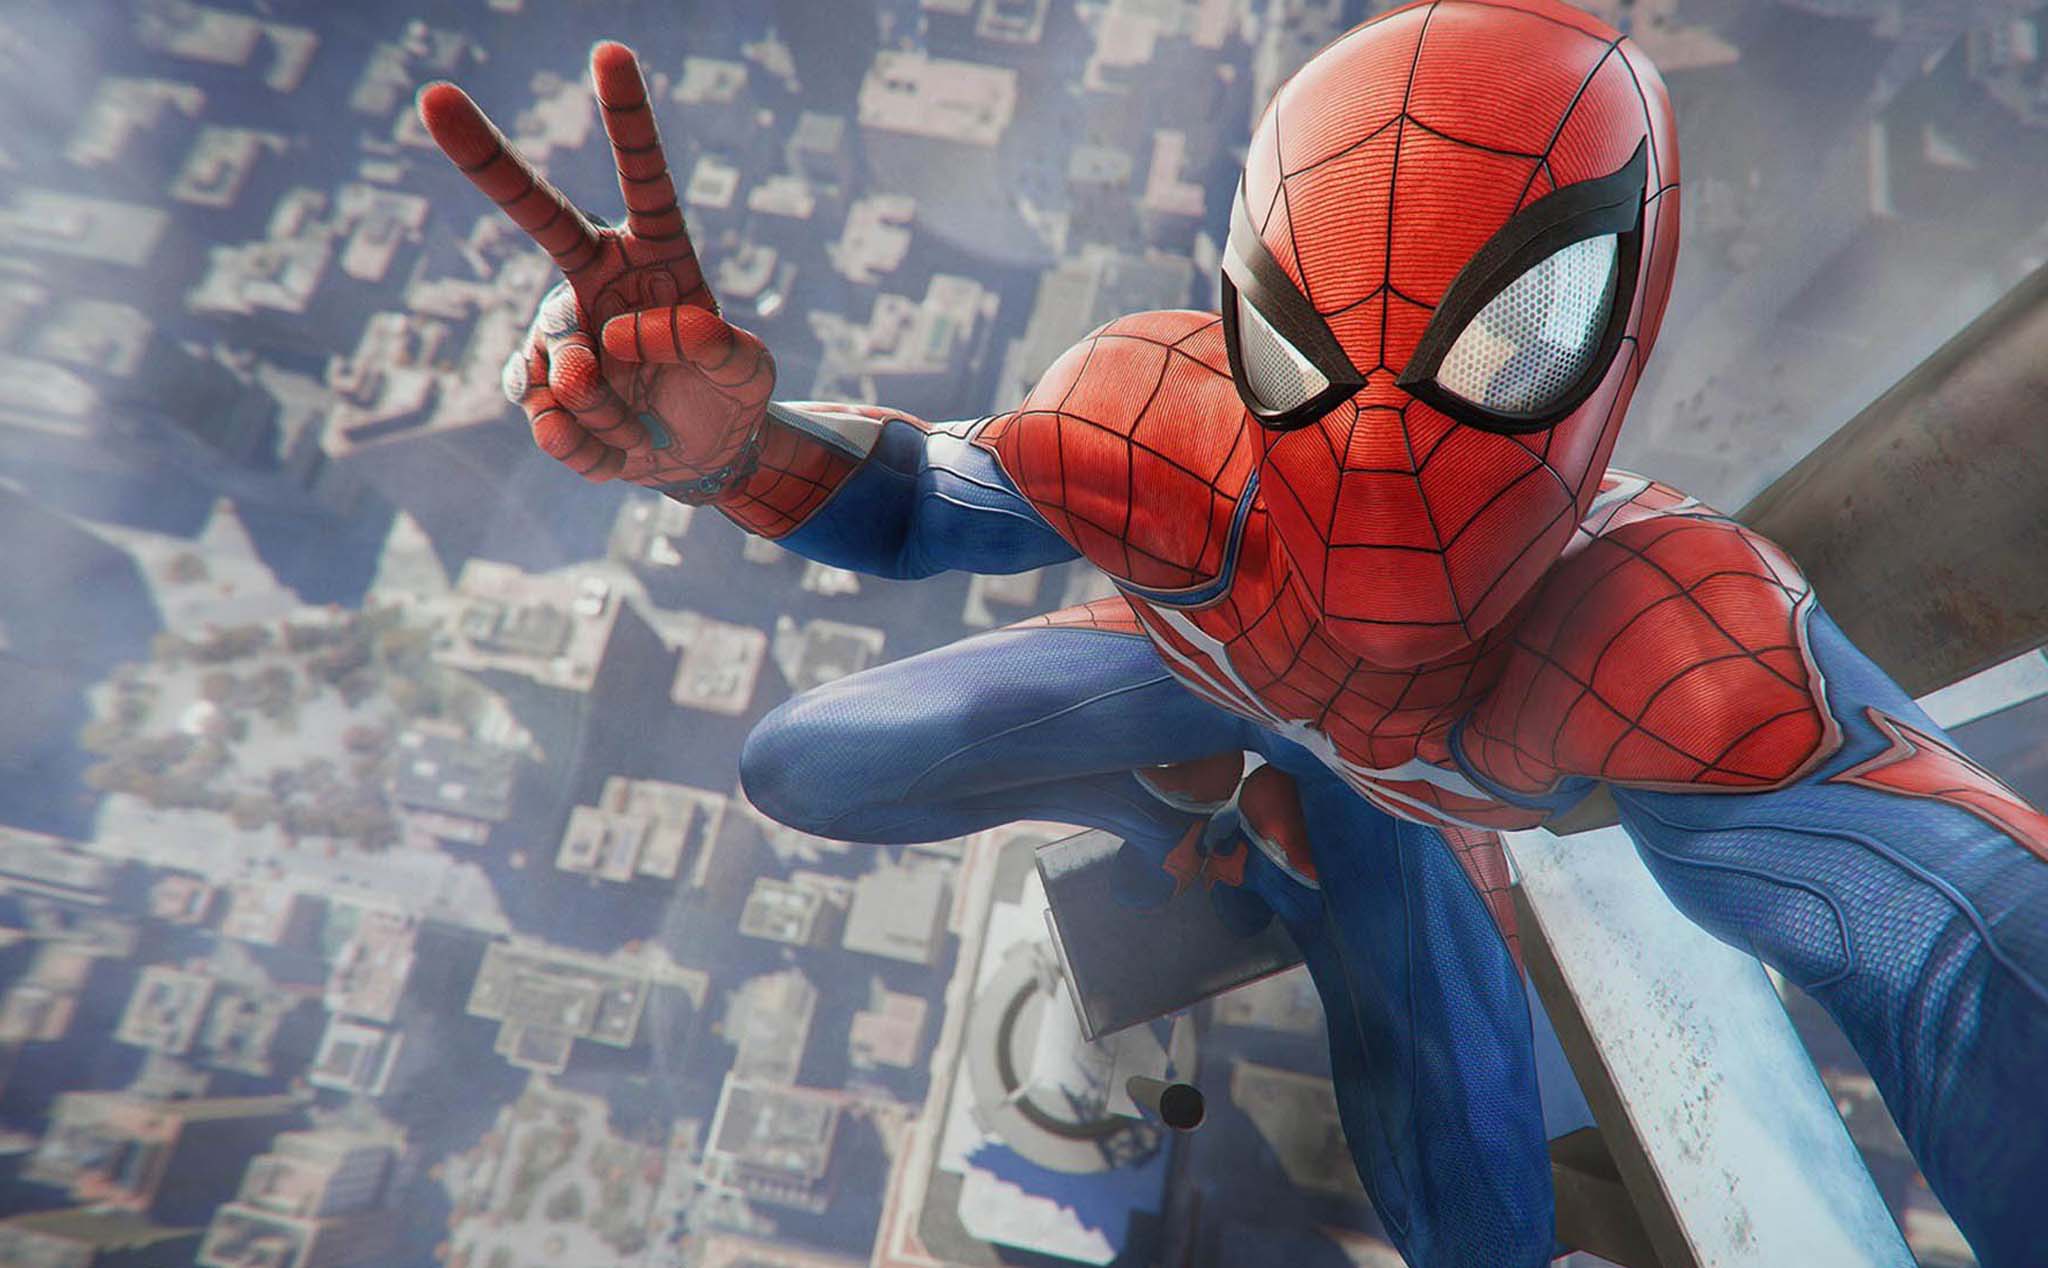 Game Spider-Man tung trailer mới, phát hành độc quyền trên PS4 ngày 07/09